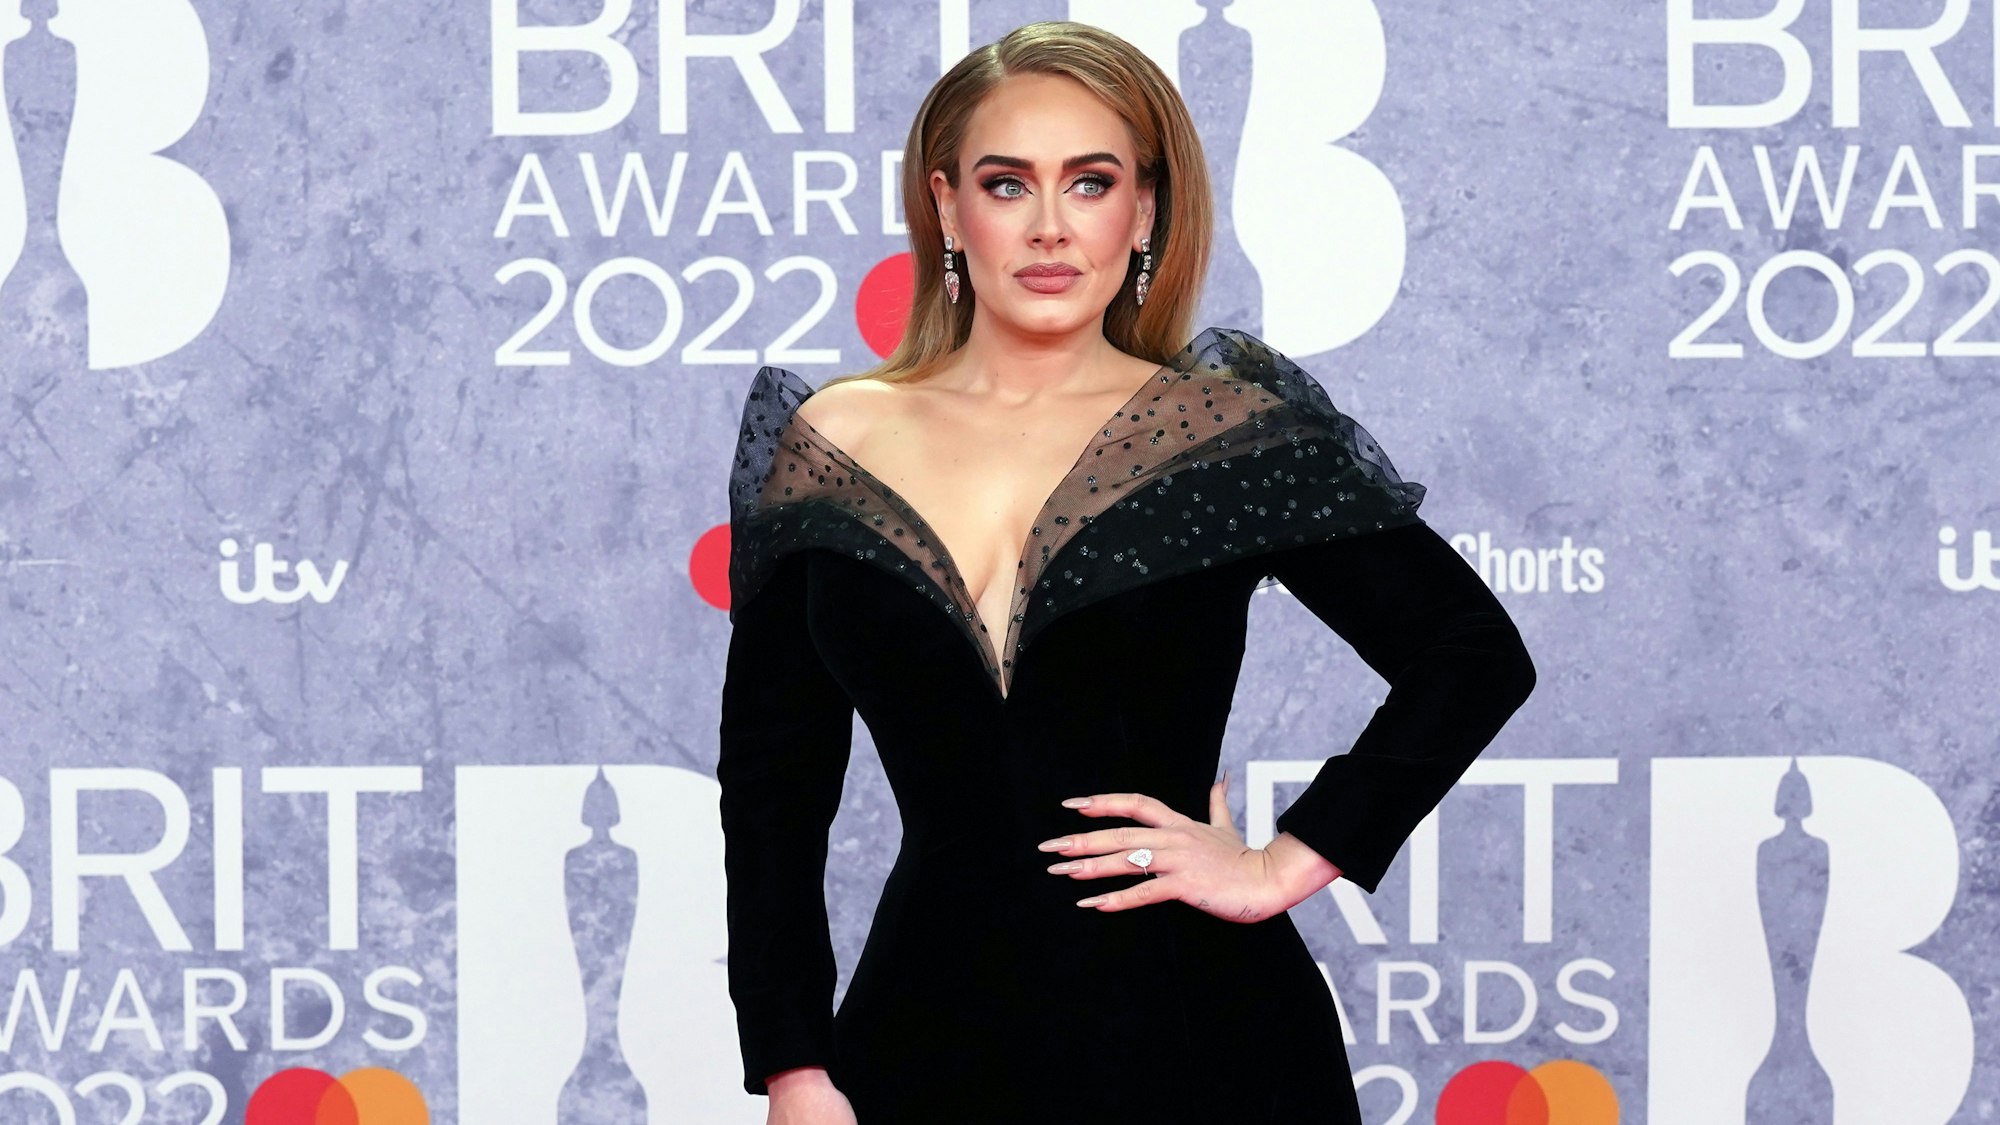 In einem Interview gab Sängerin Adele, hier bei den Brit Awards 2022 in London, bekannt, sich ein weiteres Kind zu wünschen.